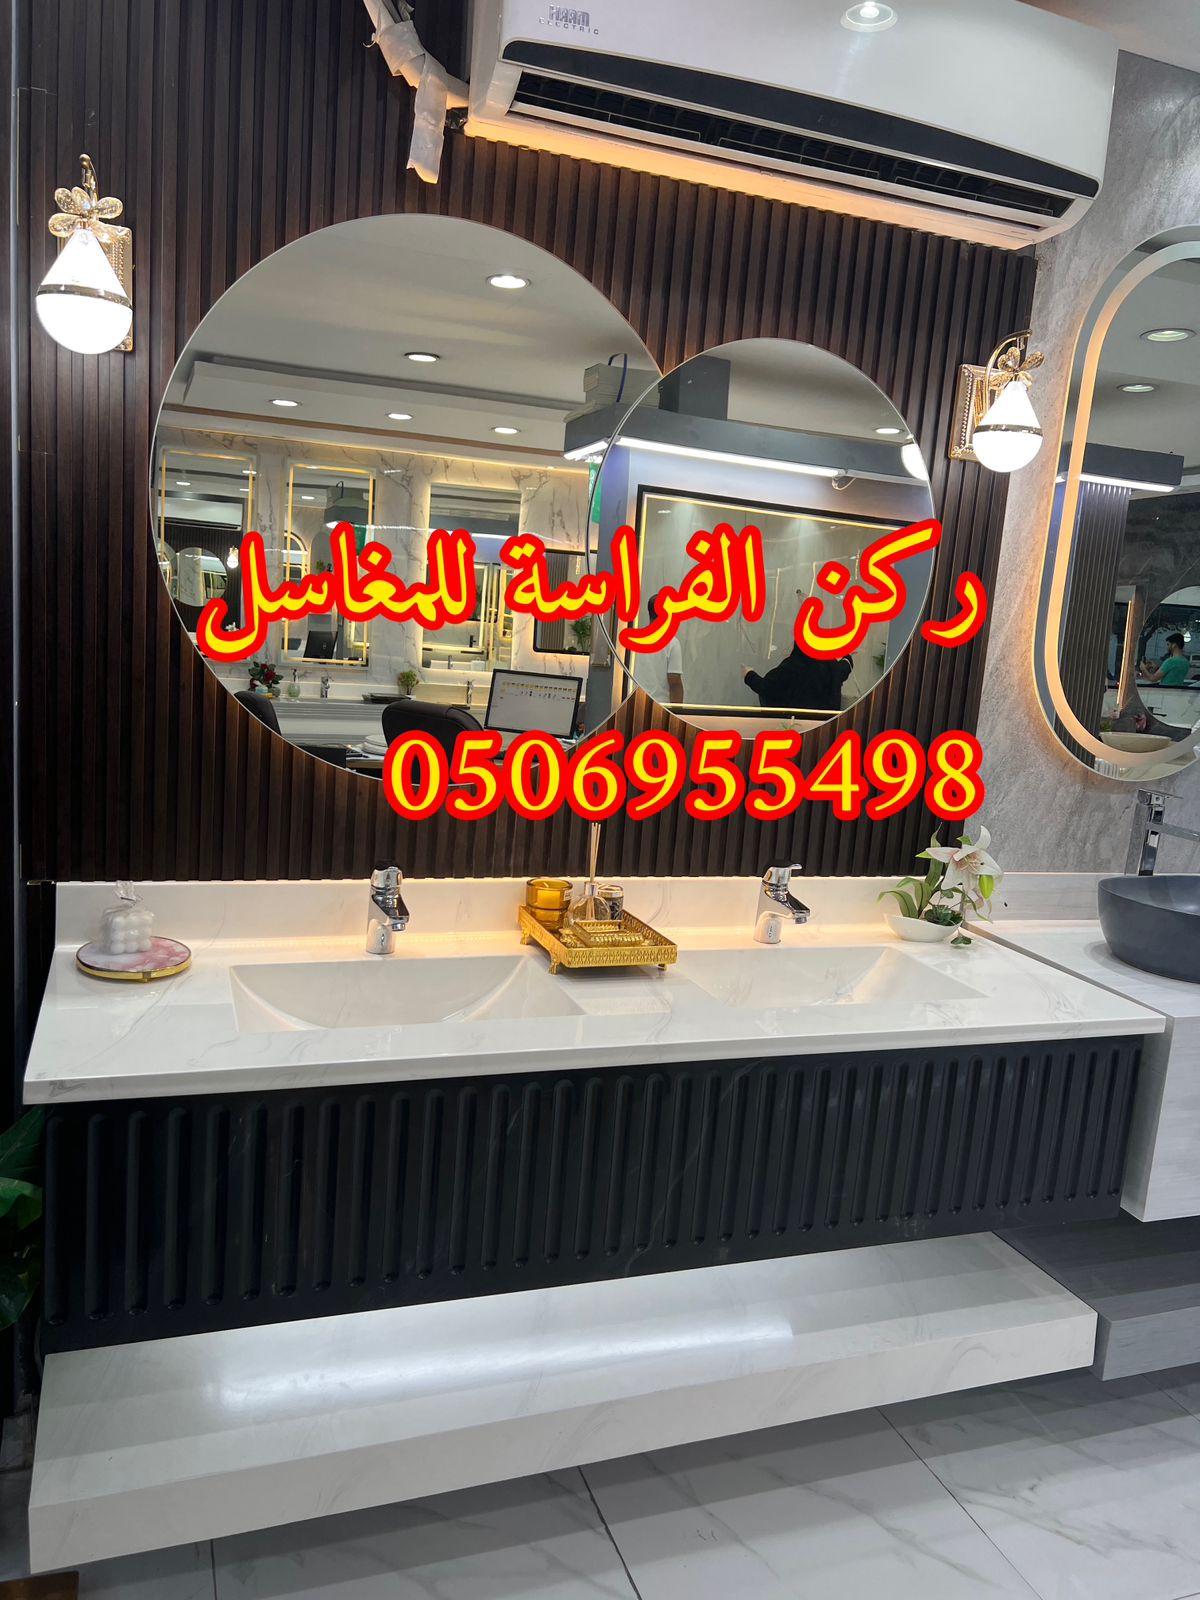 الرياض - تفصيل ديكورات مغاسل حمامات رخام في الرياض,0506955498 539135112